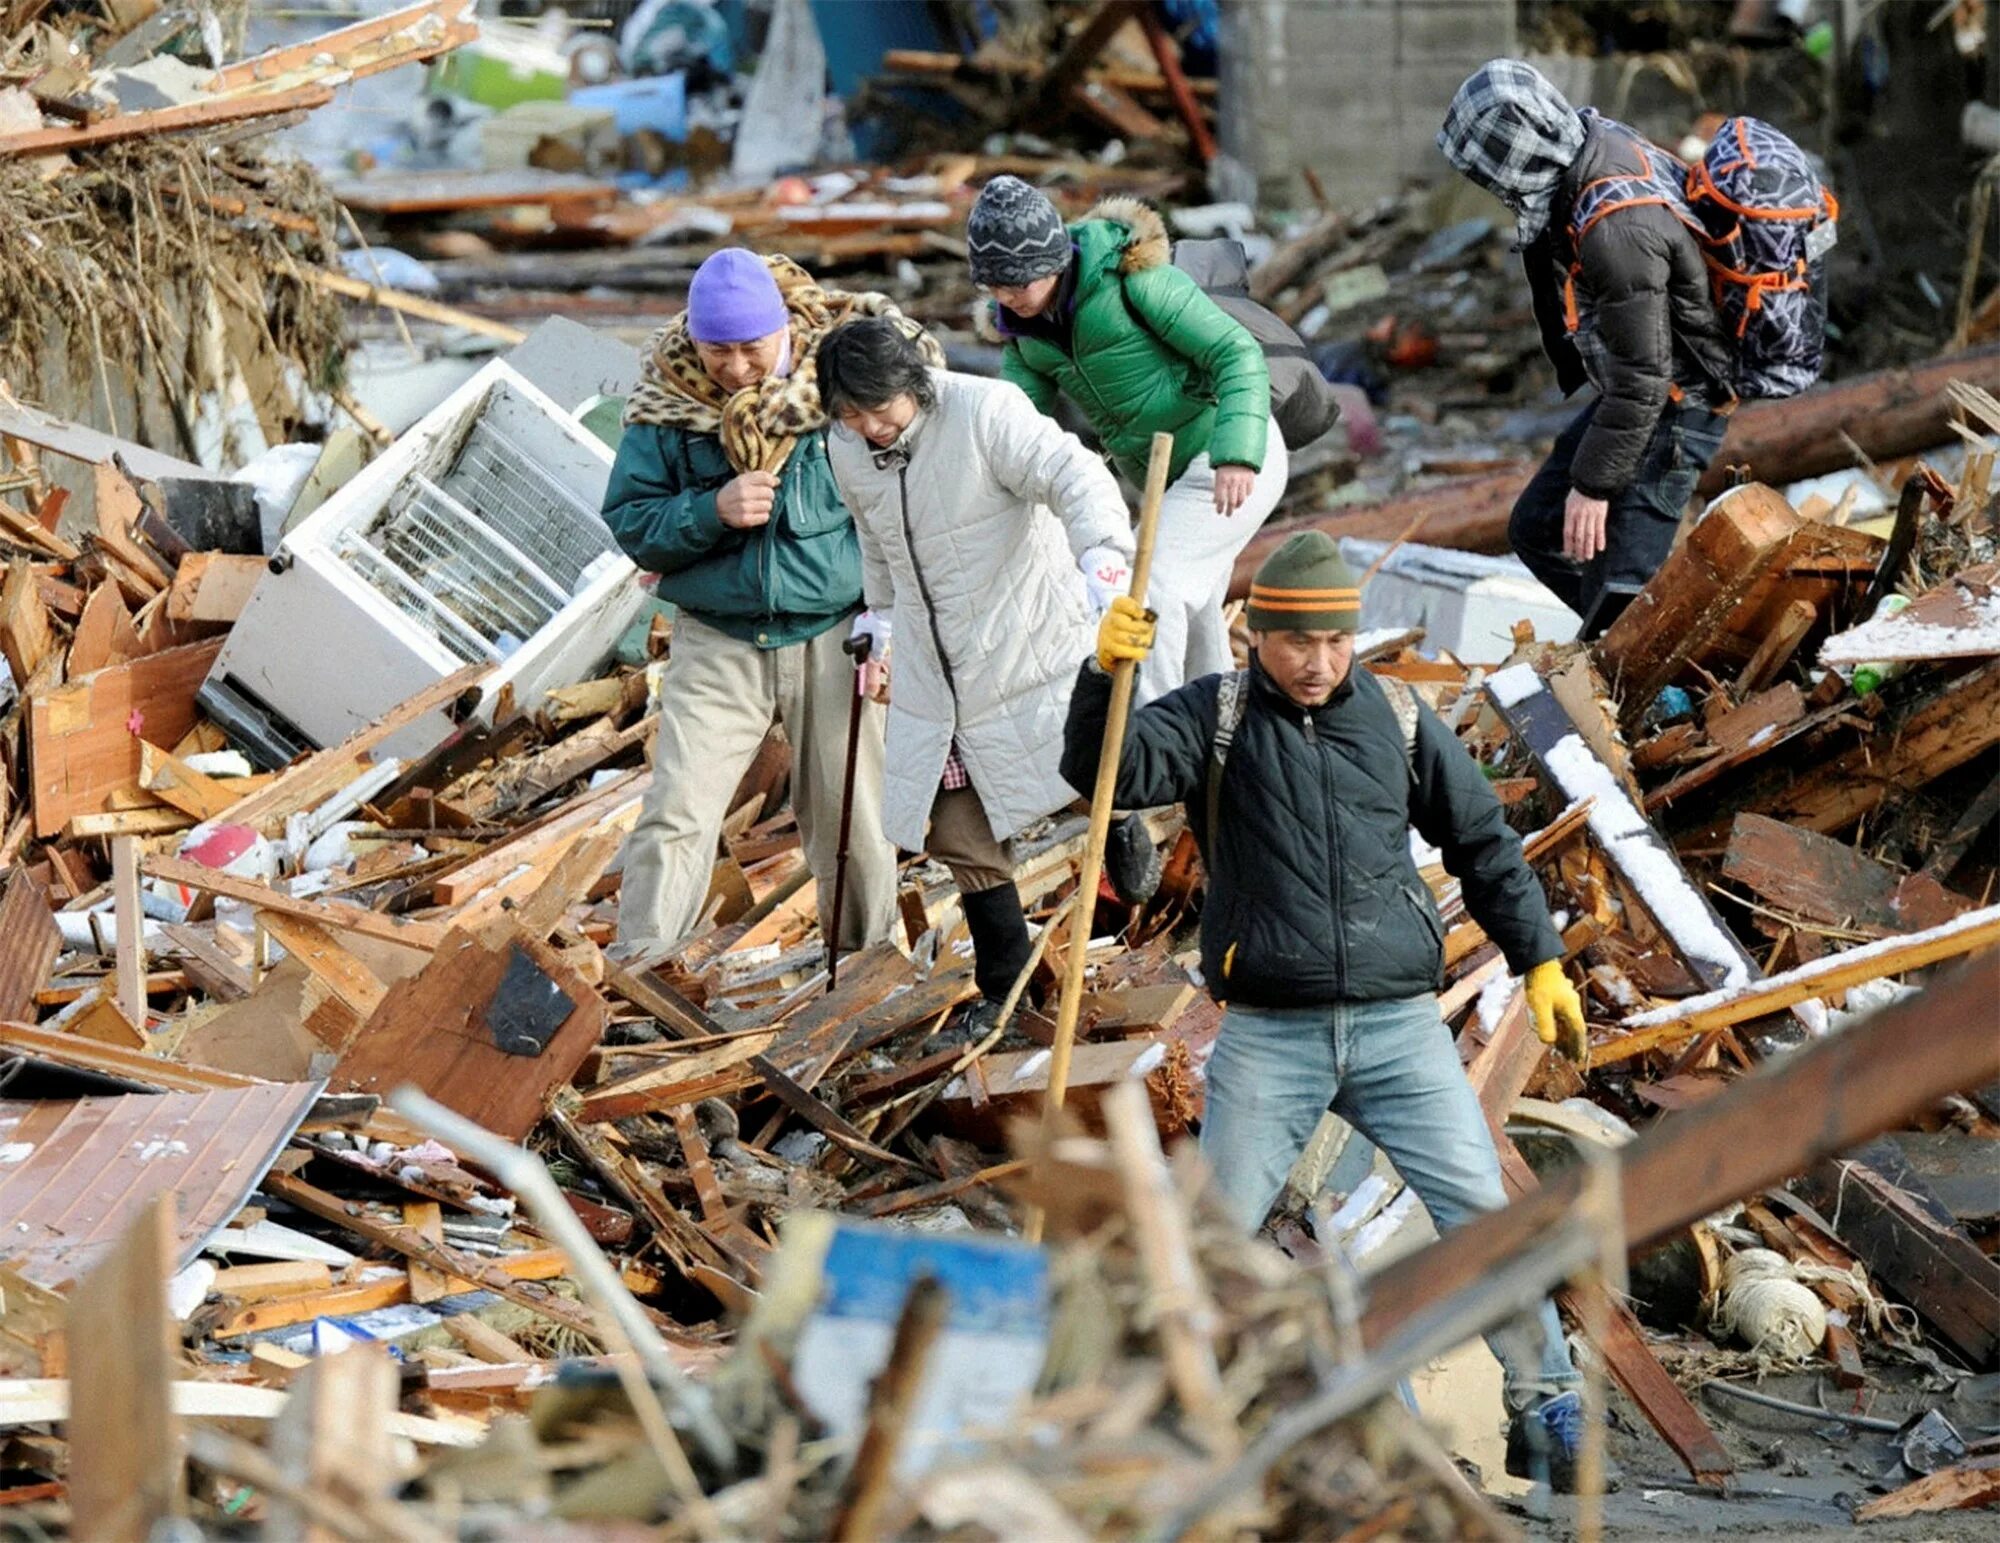 ЦУНАМИ 2011. Катастрофа в Японии 2011. ЦУНАМИ 2011 года в Японии. Землетрясение в Японии 2011. Стихийные бедствия последствия природных катастроф